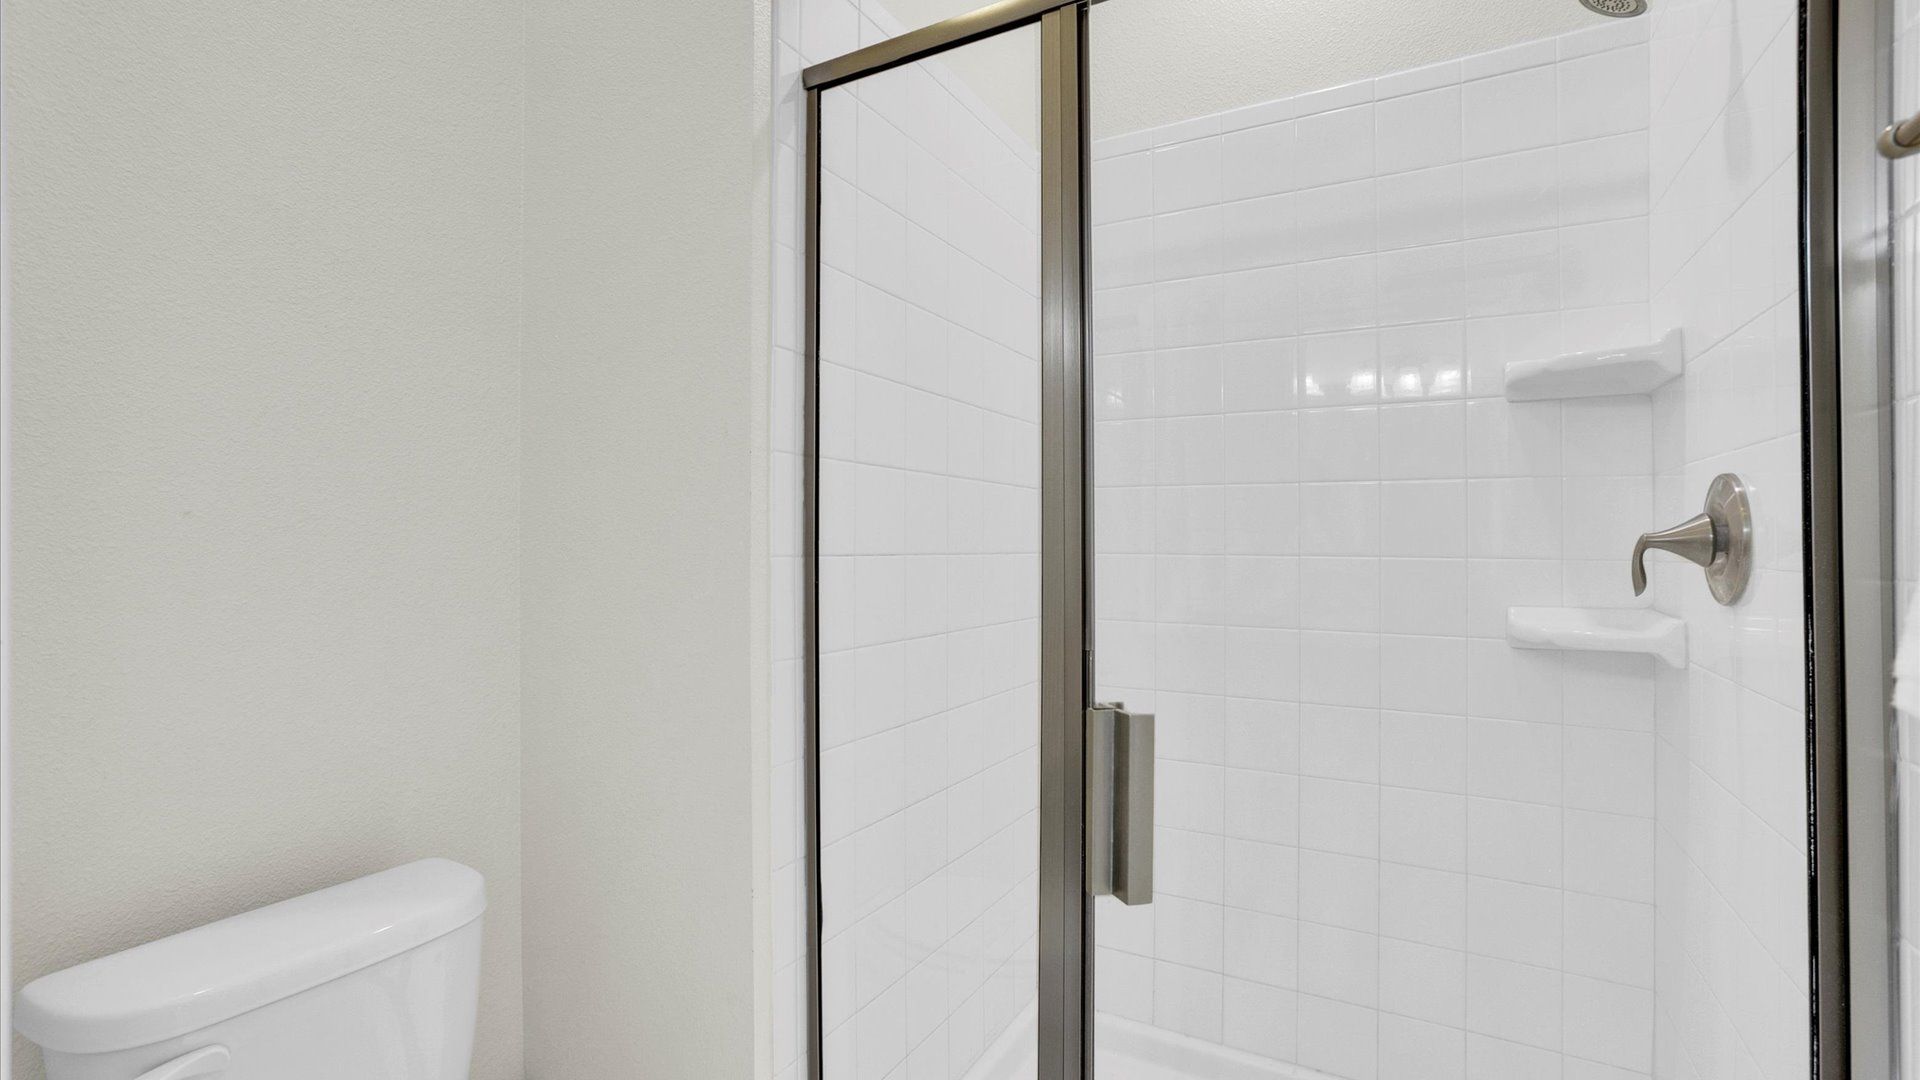 Hall Bathroom 1 (Angle)
Shower